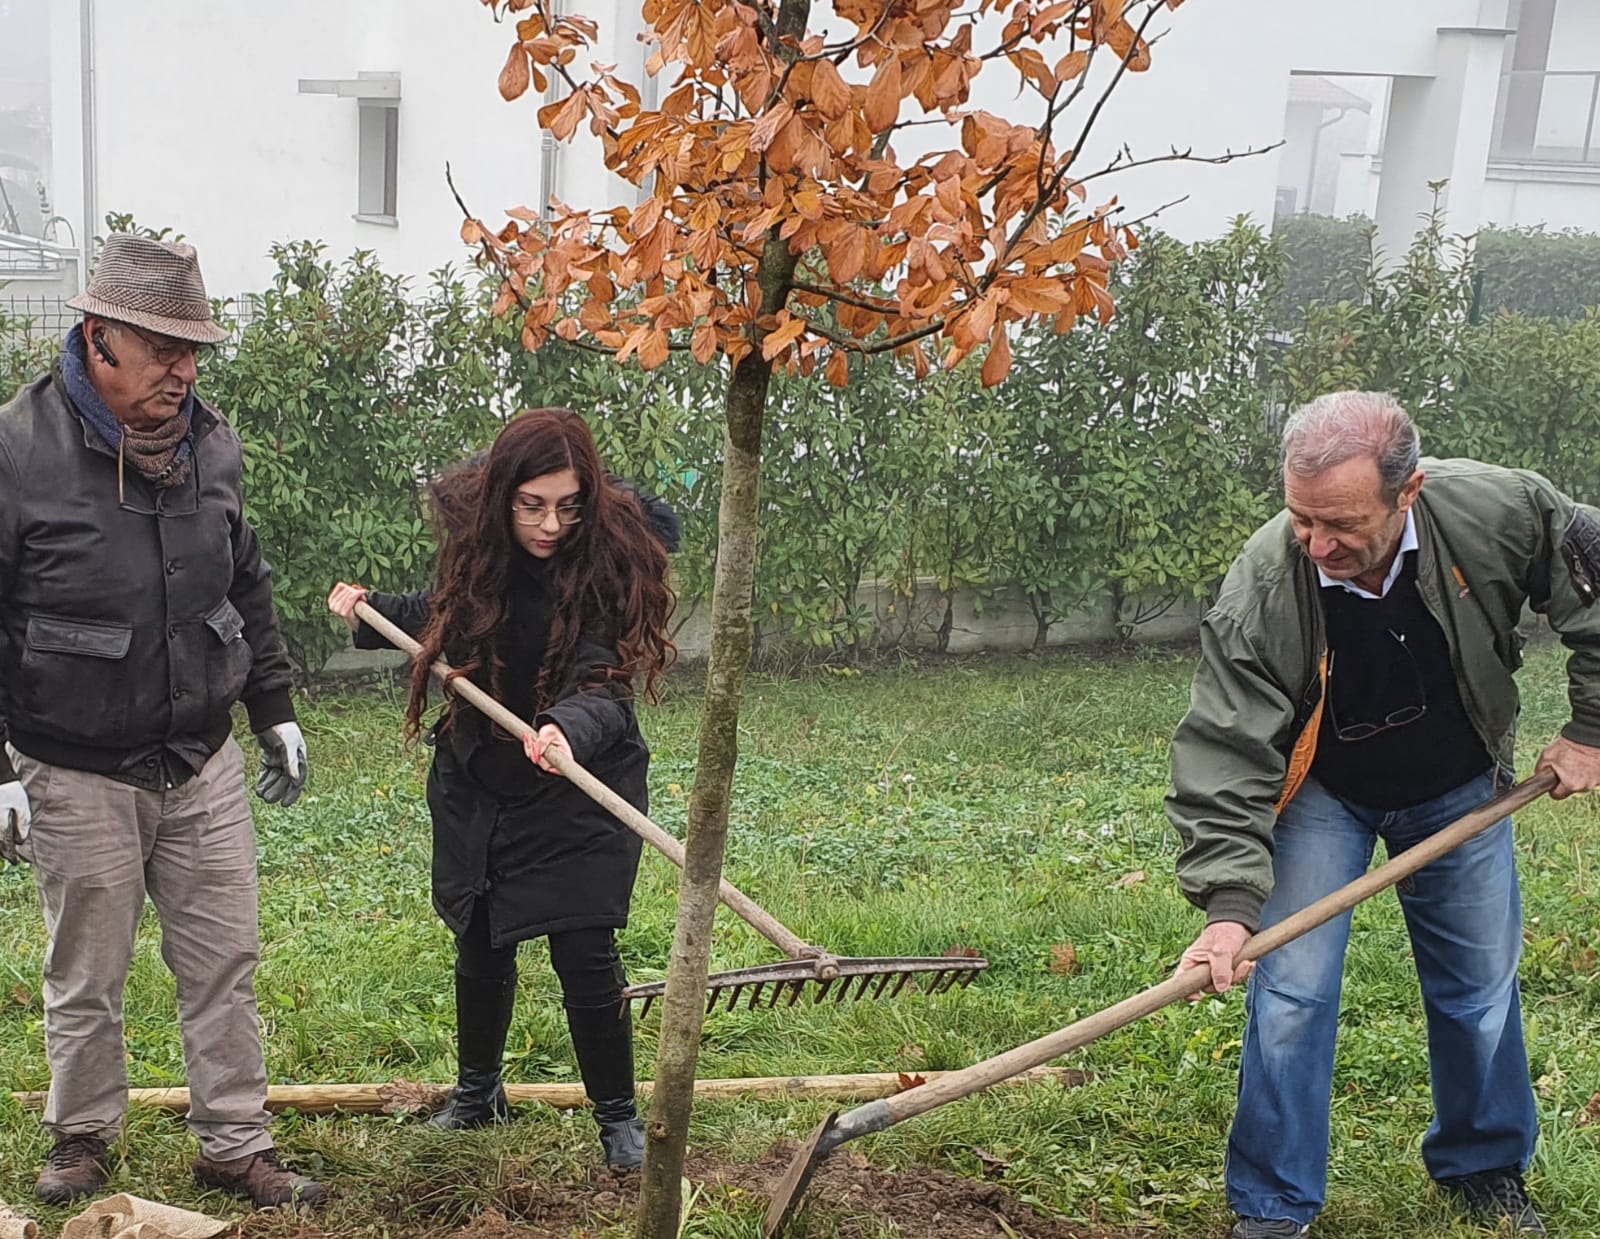 Festa degli alberi, M5s in trasferta a Varese: “L’Amministrazione di Saronno non ha promosso nessun evento”